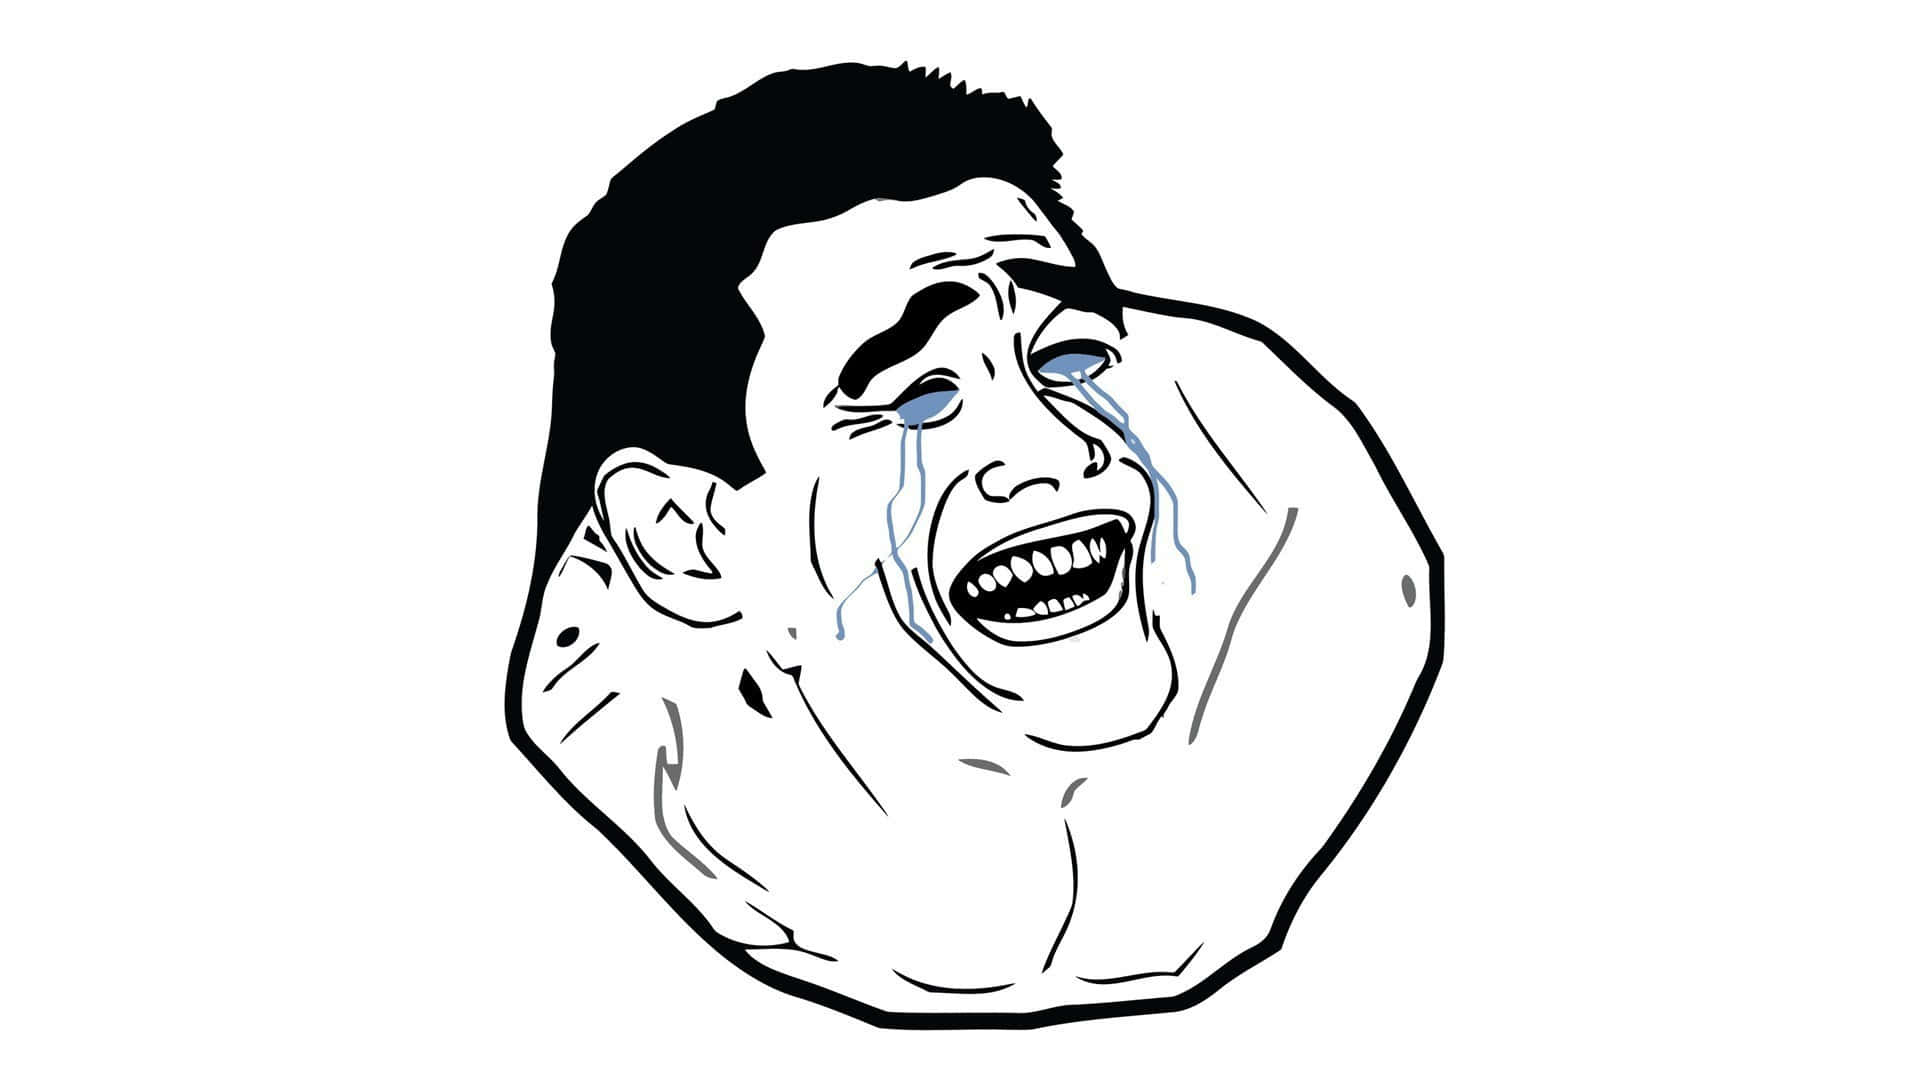 Tapet: Yao Ming grædende latterliggørende Meme ansigter sjovt billede tapet.